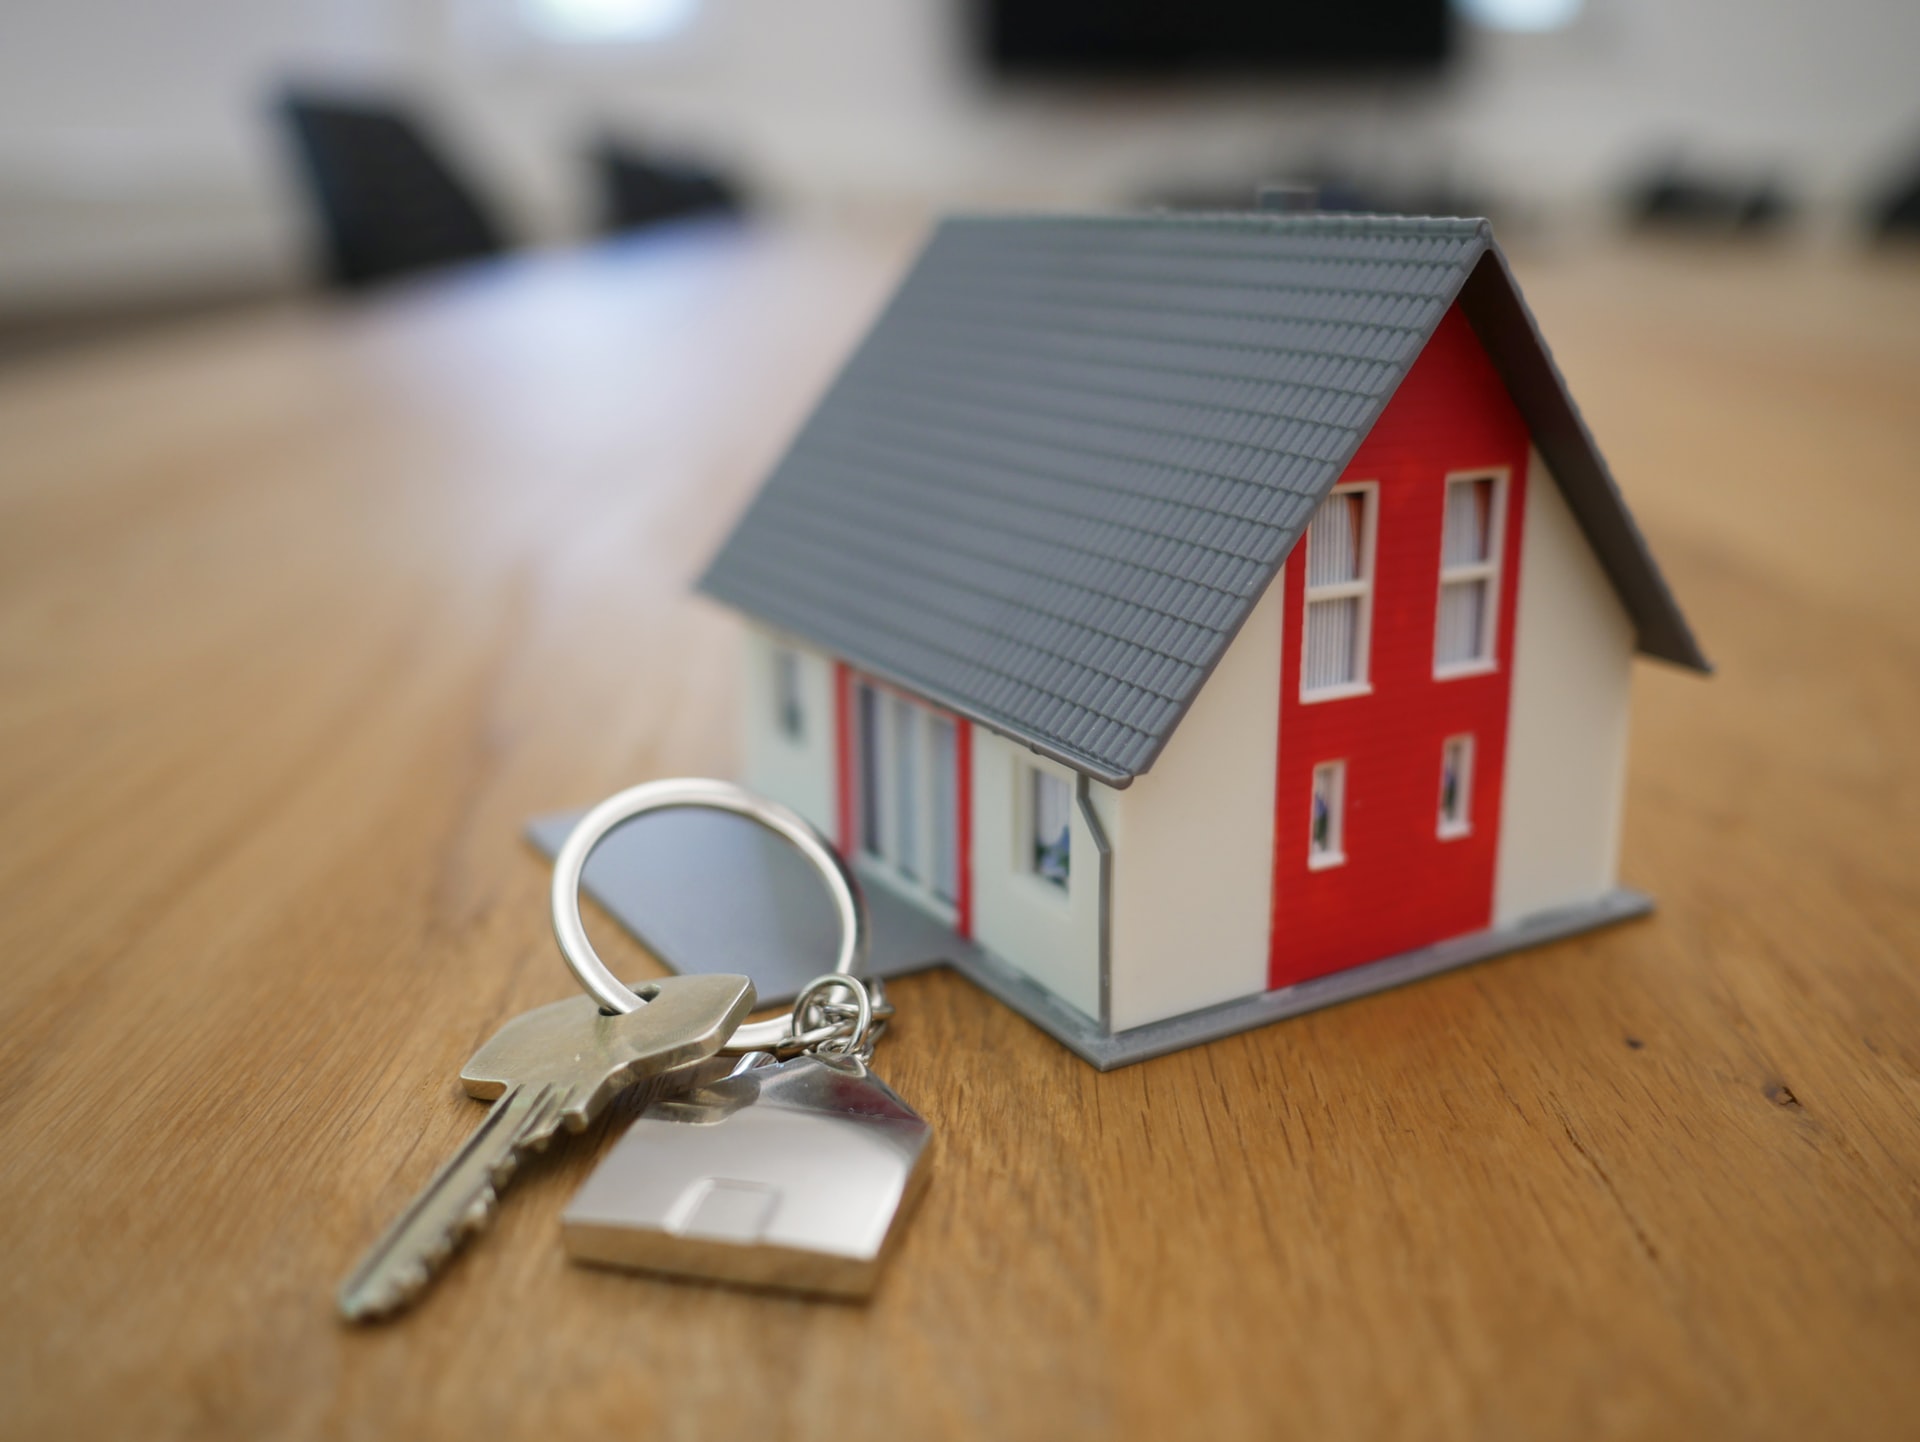 Asuntokaupat edessä? Minkälainen laina sopii asunnon ostamiseen?